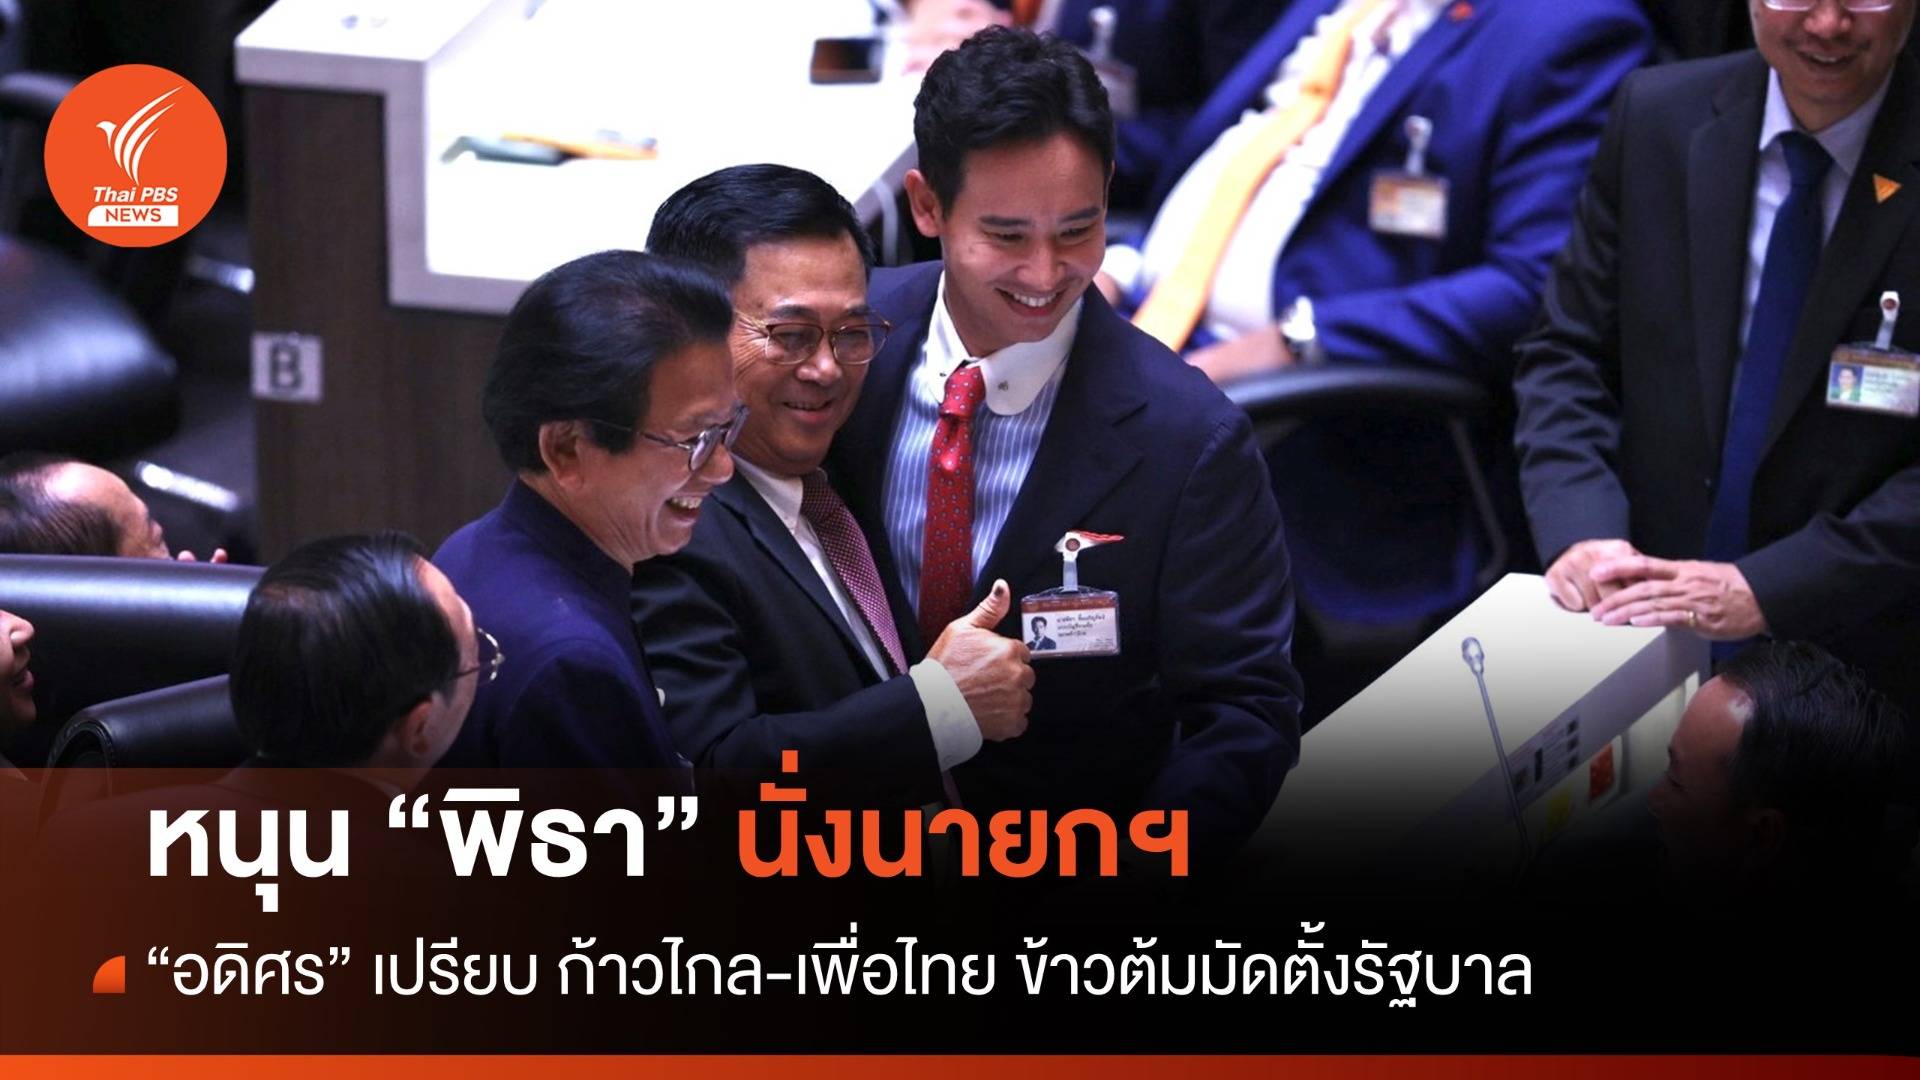 ประชุมสภา : "อดิศร" หนุน "พิธา" นั่งนายกฯ เปรียบ "ก้าวไกล-เพื่อไทย" ข้าวต้มมัดตั้งรัฐบาล